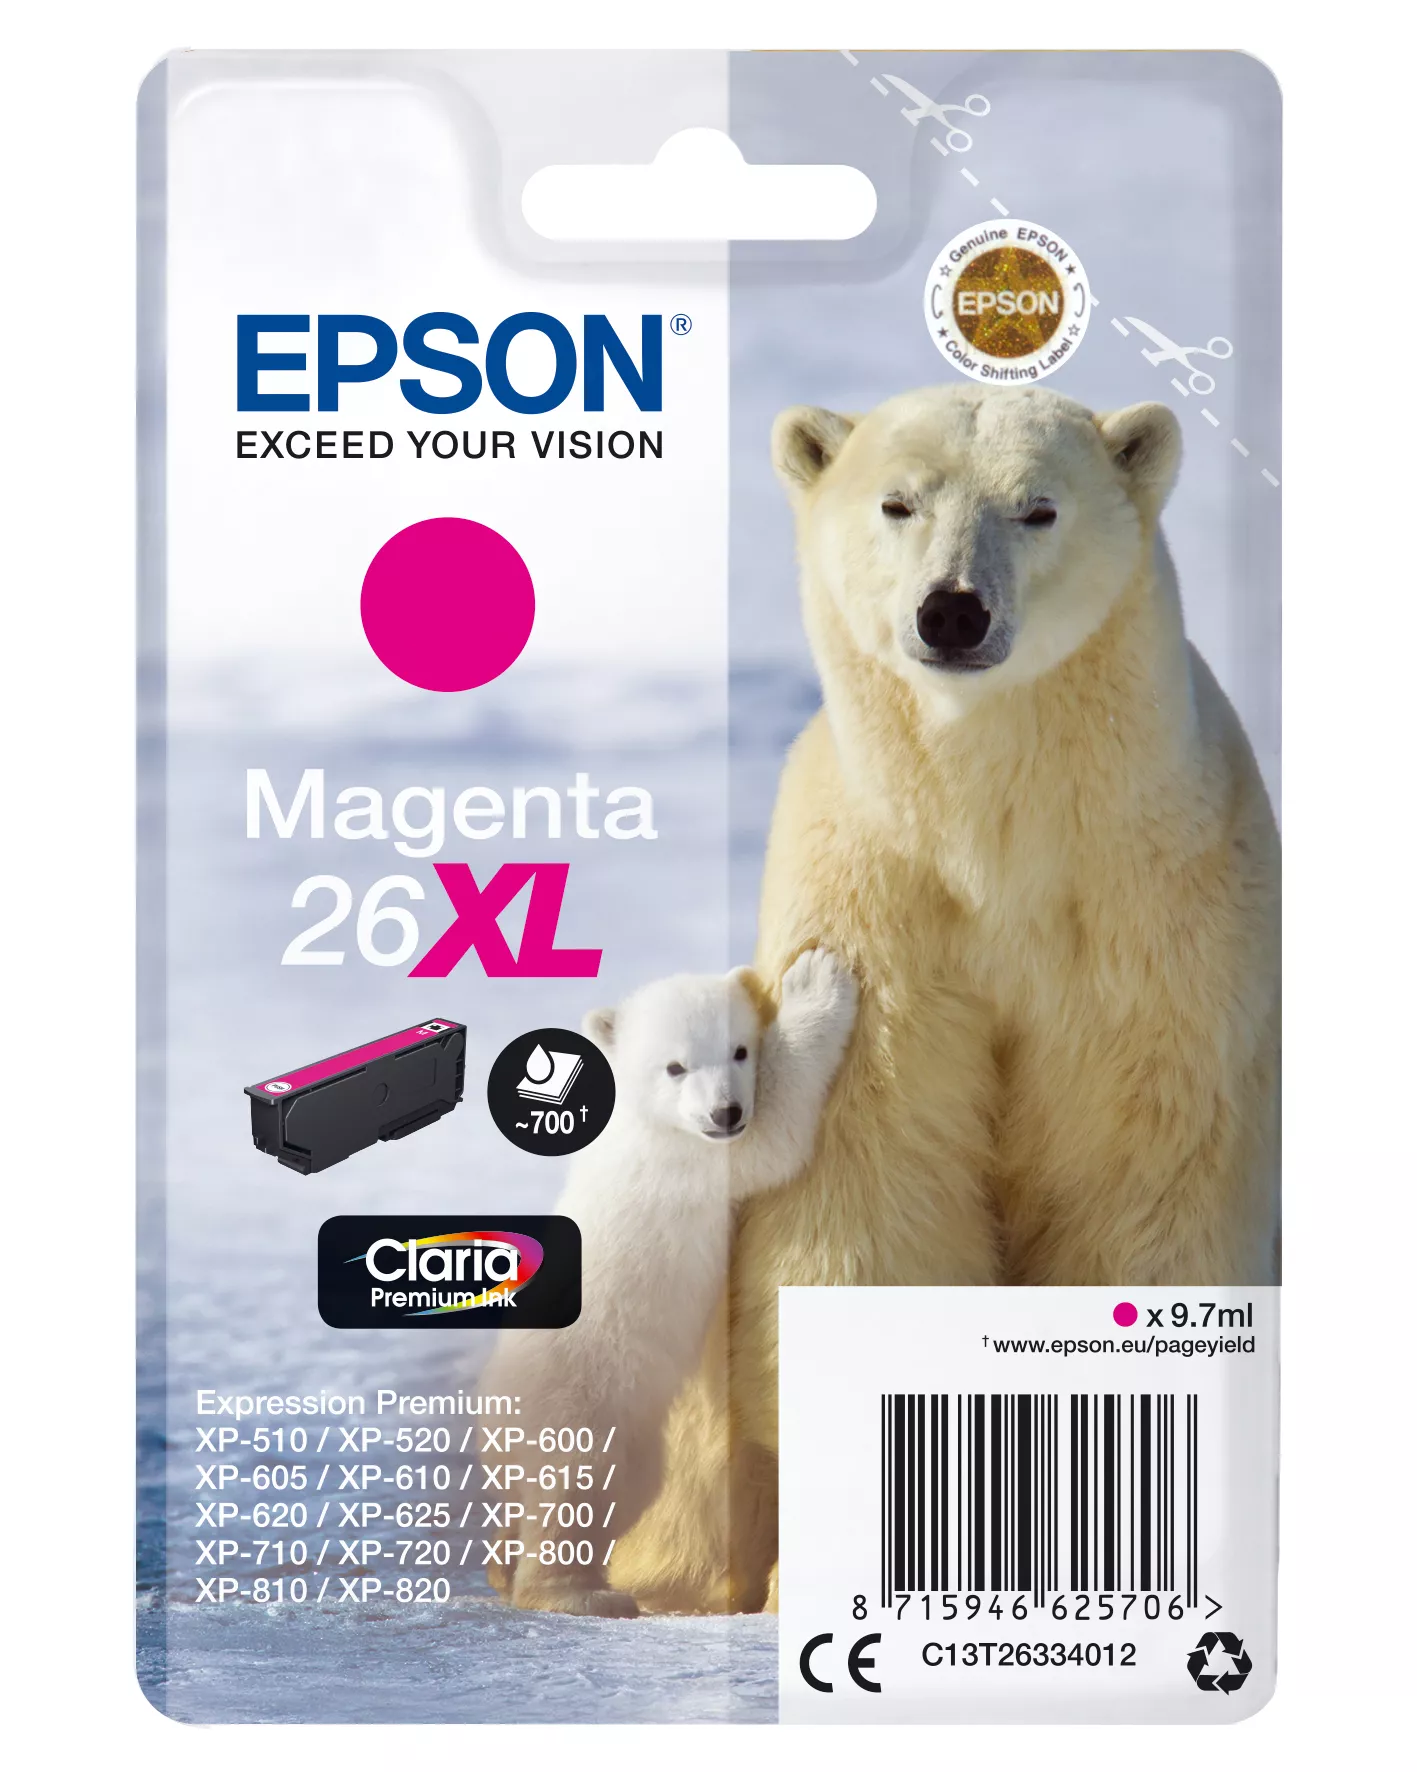 Achat EPSON 26XL cartouche dencre magenta haute capacité 9.7ml au meilleur prix